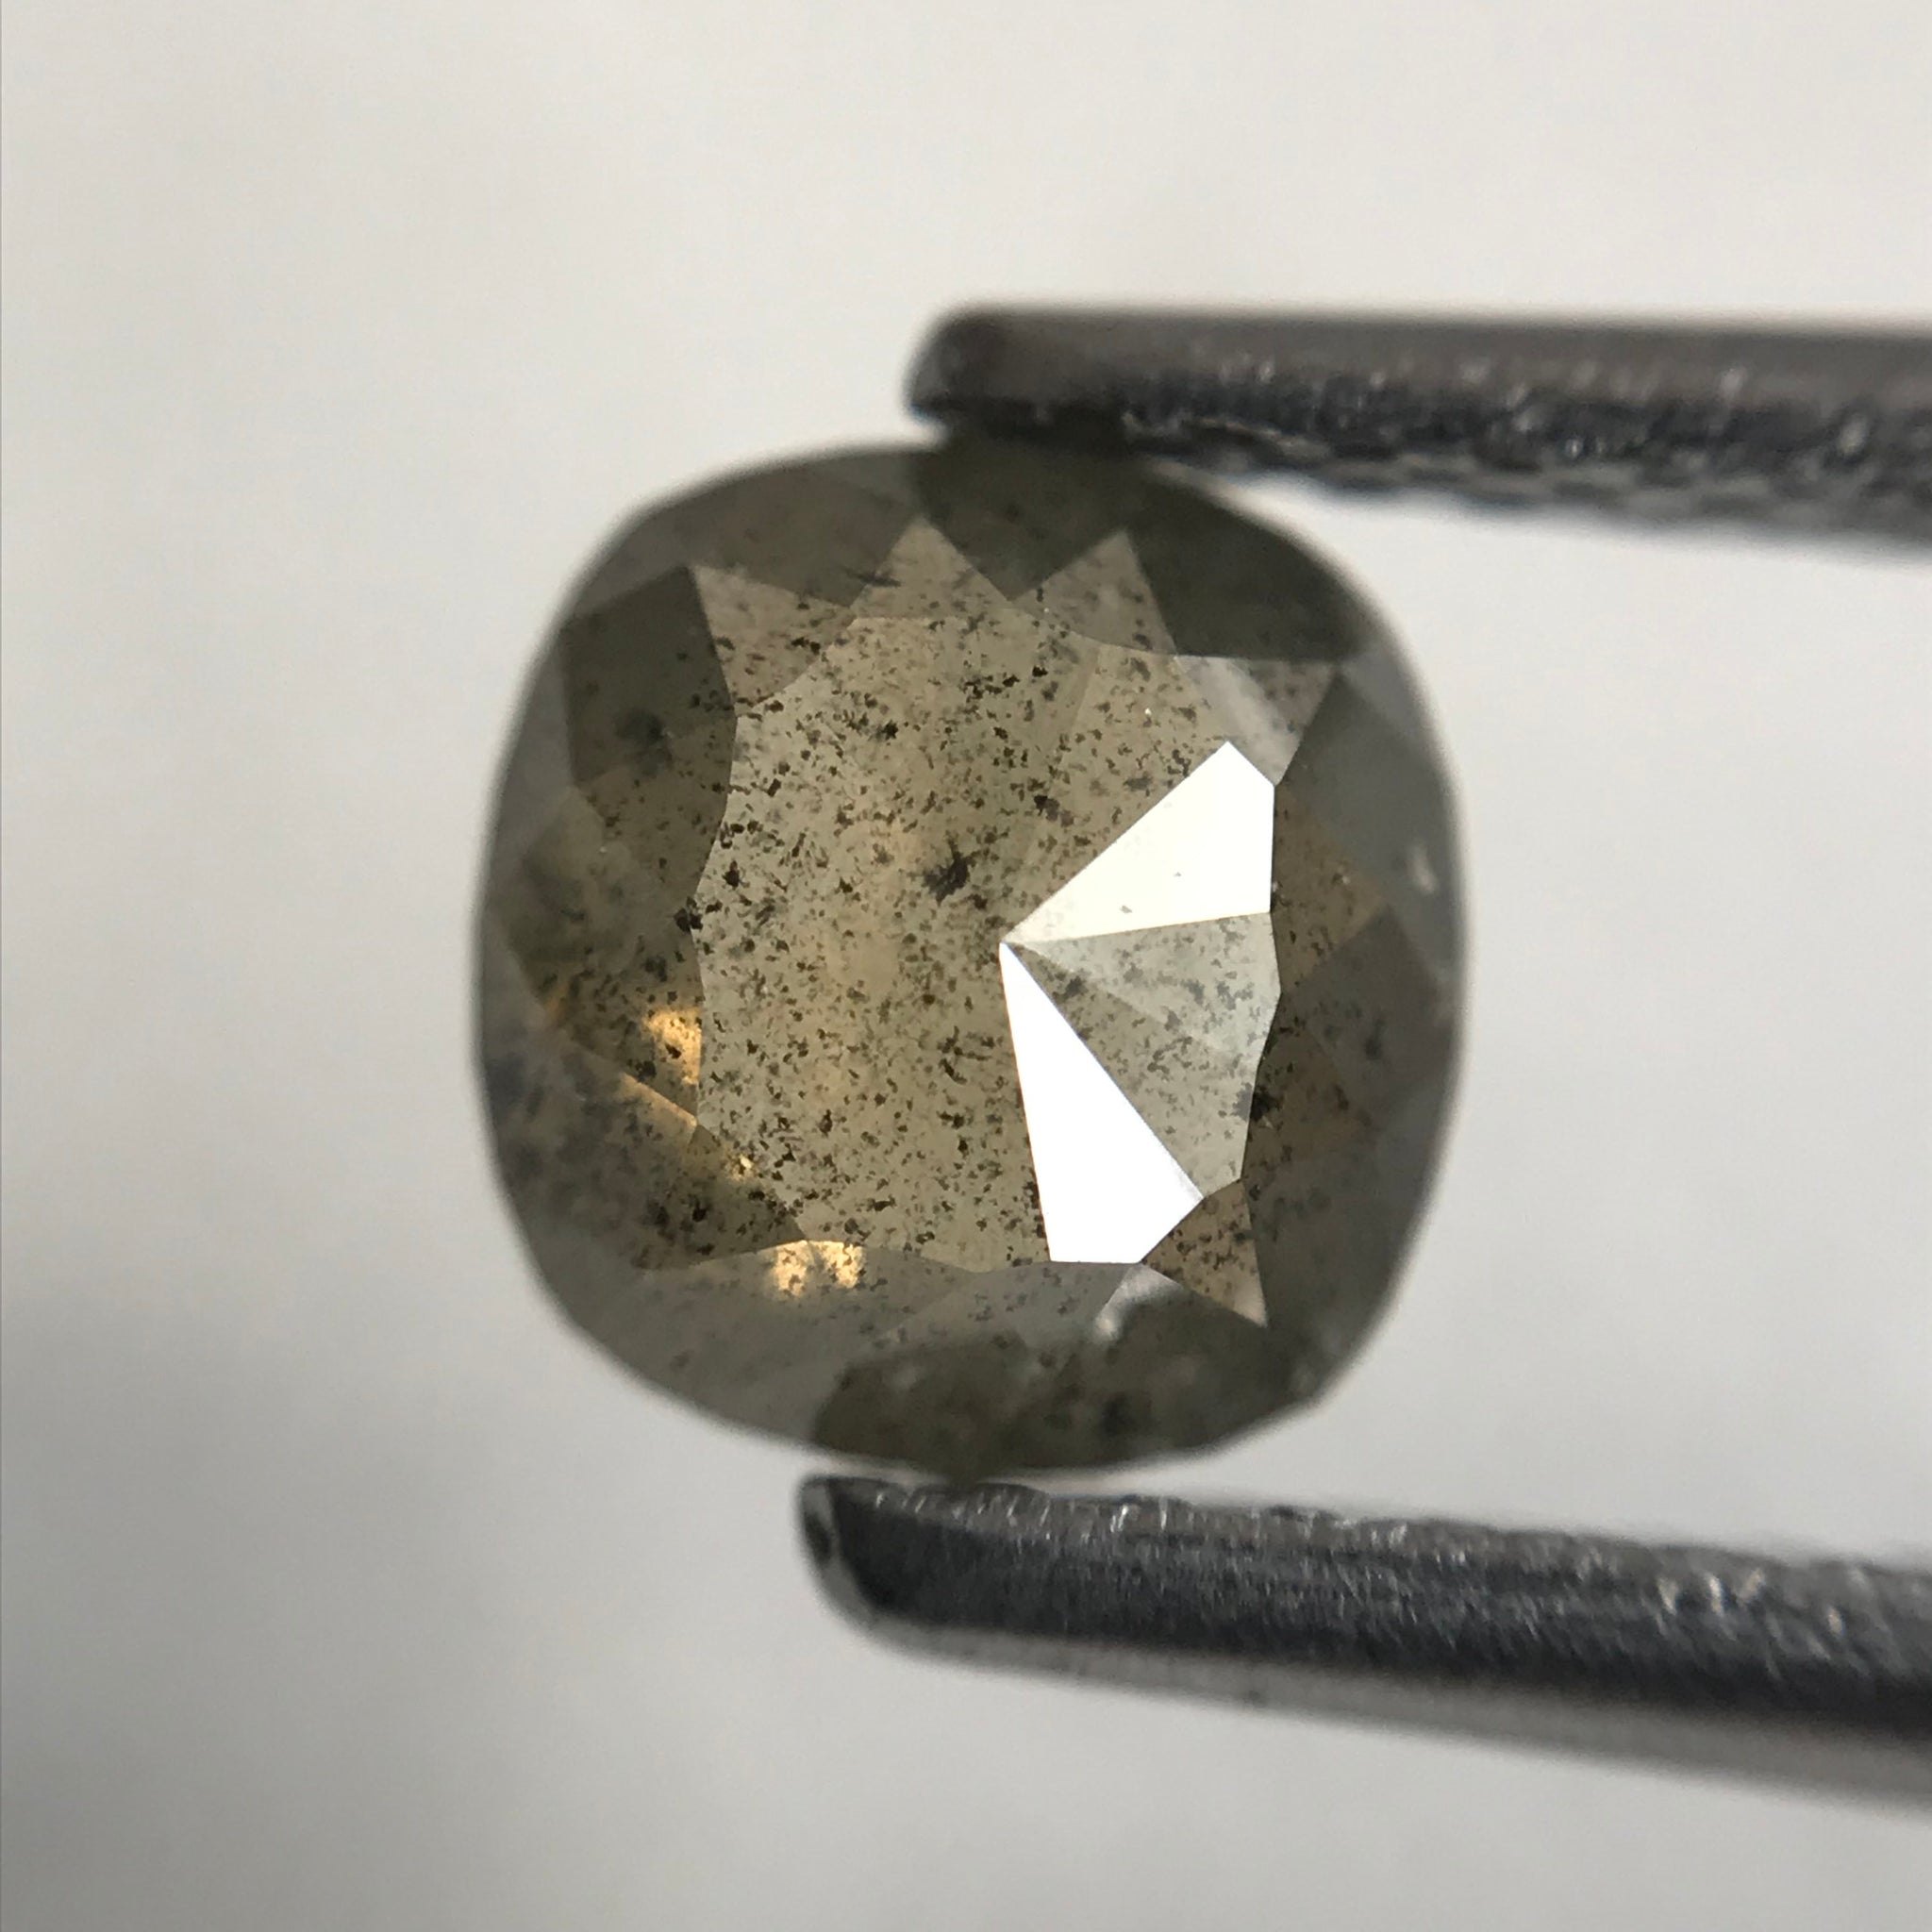 0.69 Ct Natural loose diamond 5.90 mm X 5.25 mm x 2.30 mm Oval Shape Rustic Diamond, Grey Oval Cut Rose Cut Natural Diamond SJ31/15